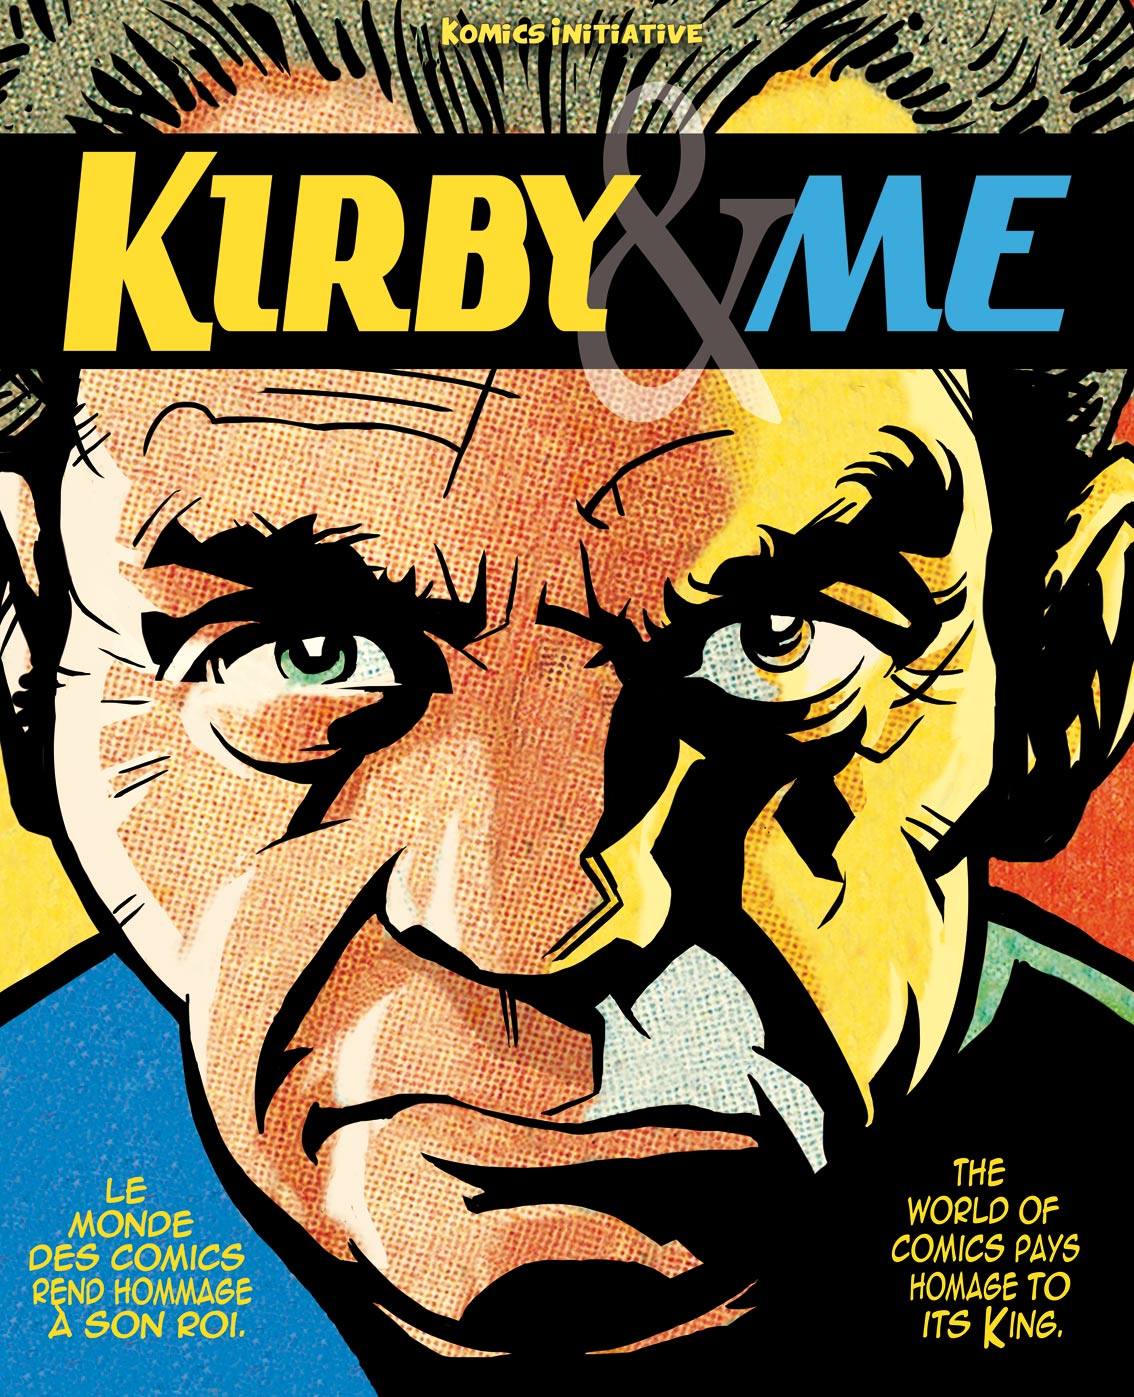 La couverture de Kirby&Me par Laurent lefeuvre